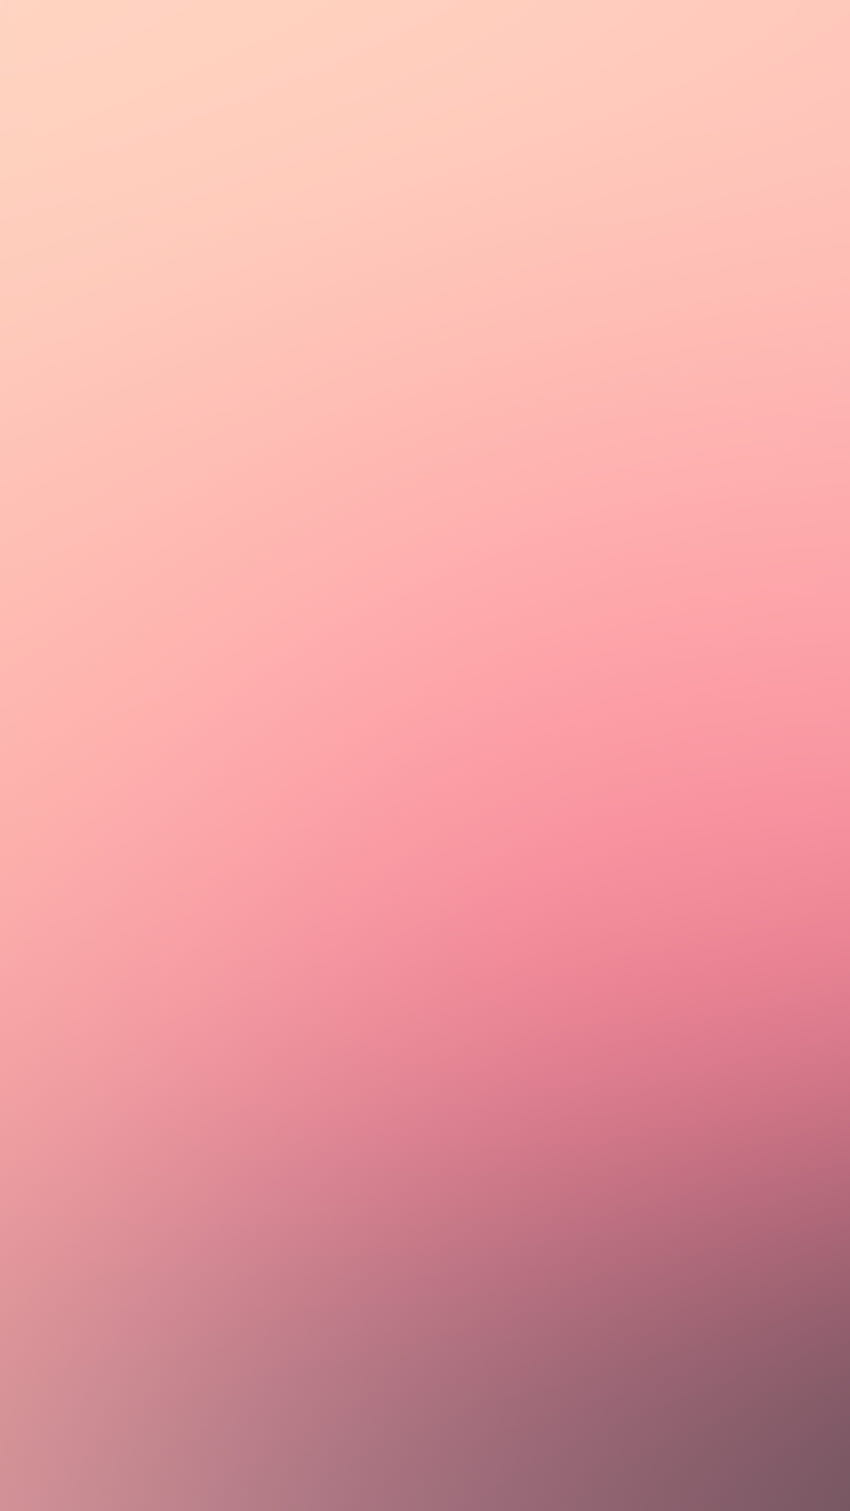 Rosa oro rosa carino per iPhone - iPhone 7 Plus oro rosa - e Sfondo del telefono HD